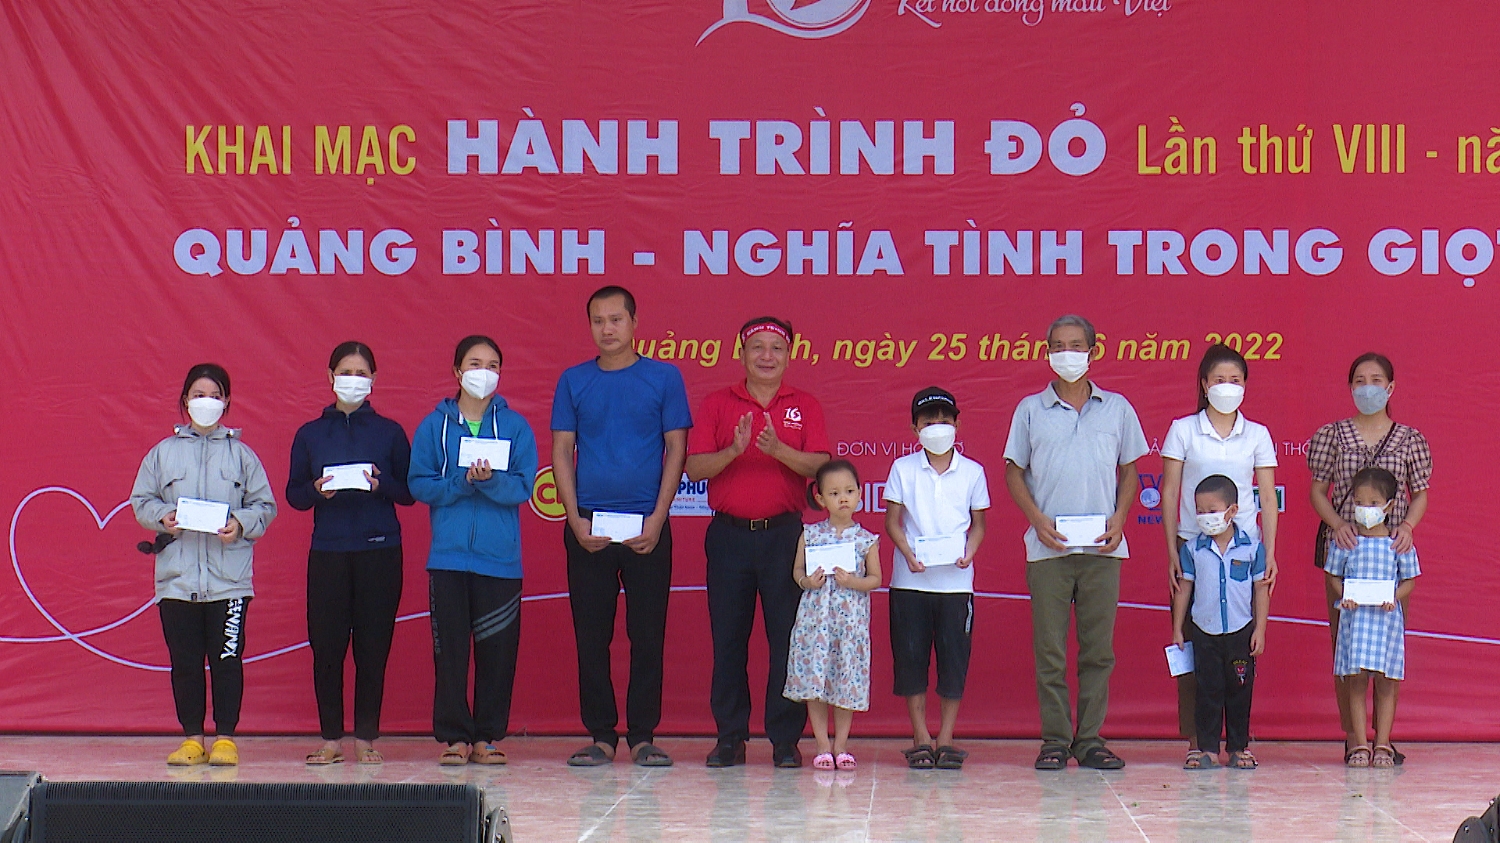 Ngân hàng TMCP Đầu tư và phát triển Việt Nam Chi nhánh Bắc Quảng Bình đã tặng 20 suất quà cho các bệnh nhân bị các bệnh về máu đang điều trị tại bệnh viện Đa khoa khu vực Bắc Quảng Bình